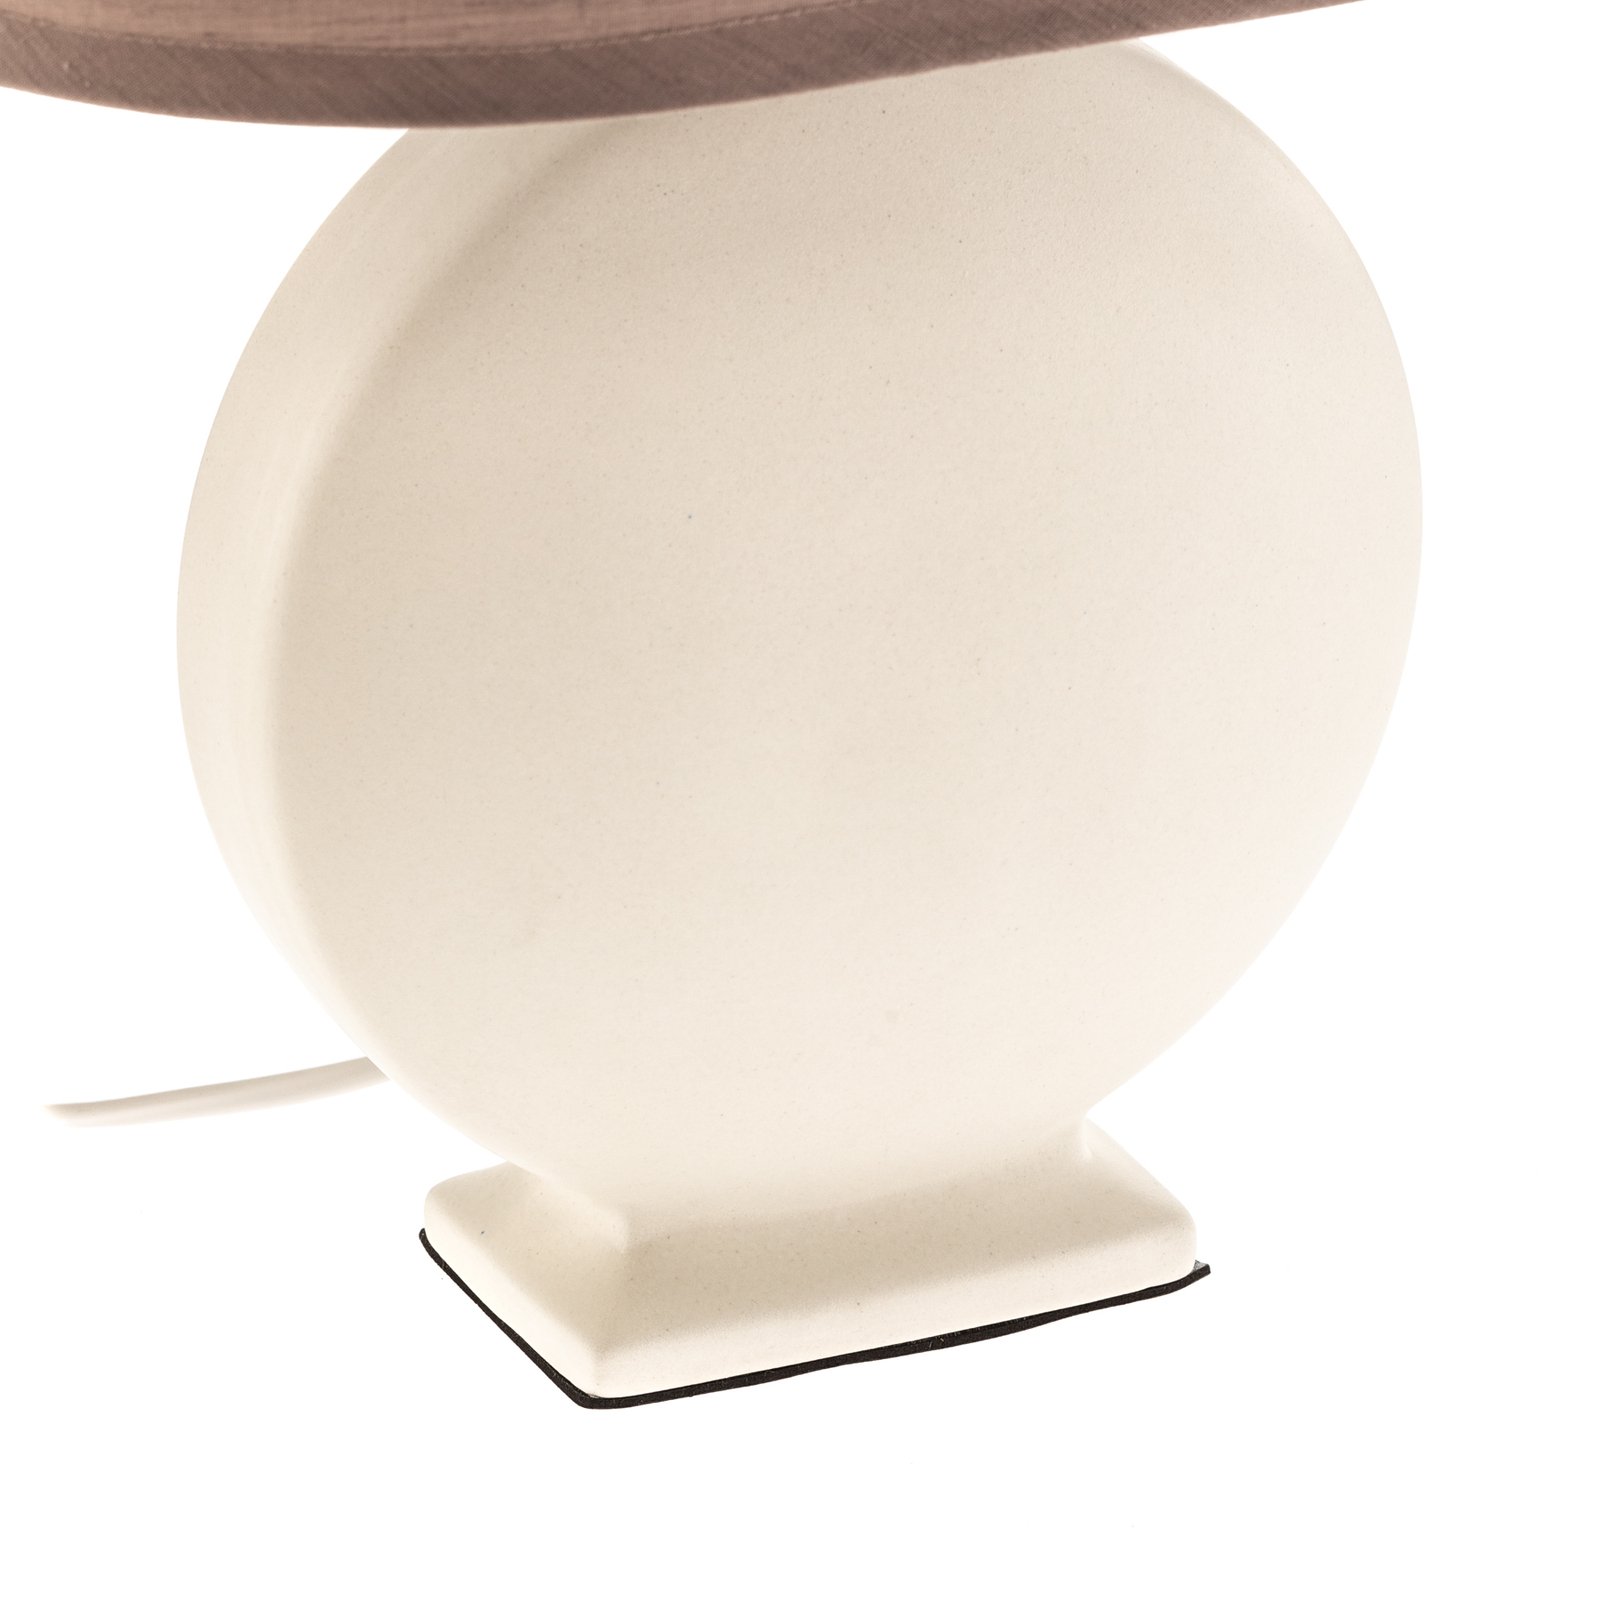 Zen bordlampe, beige skjerm, keramisk fot, 46 cm